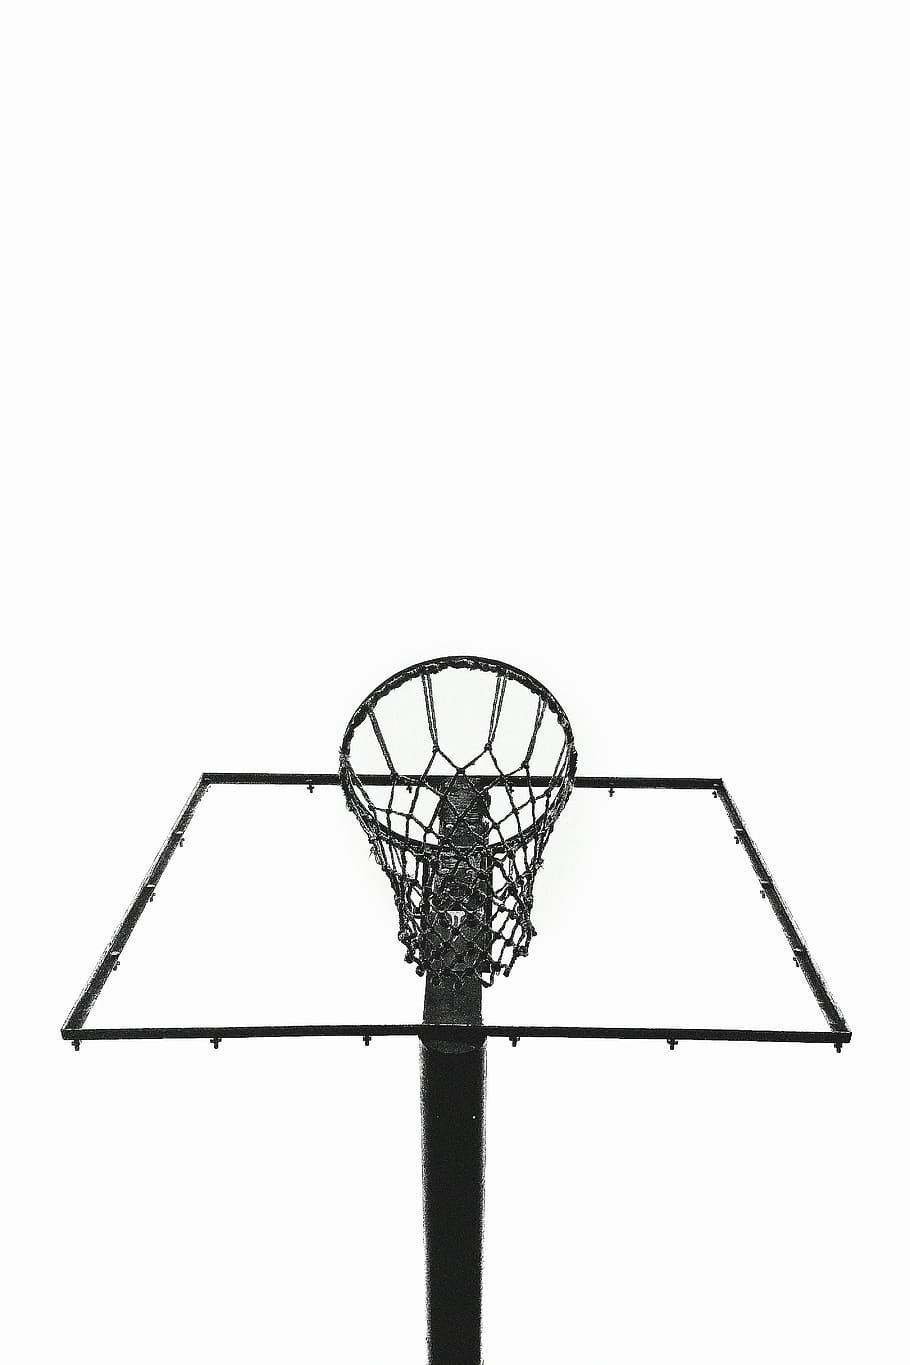 black basketball hoop, steel, framed, net, hoops, fitness, sports, HD wallpaper